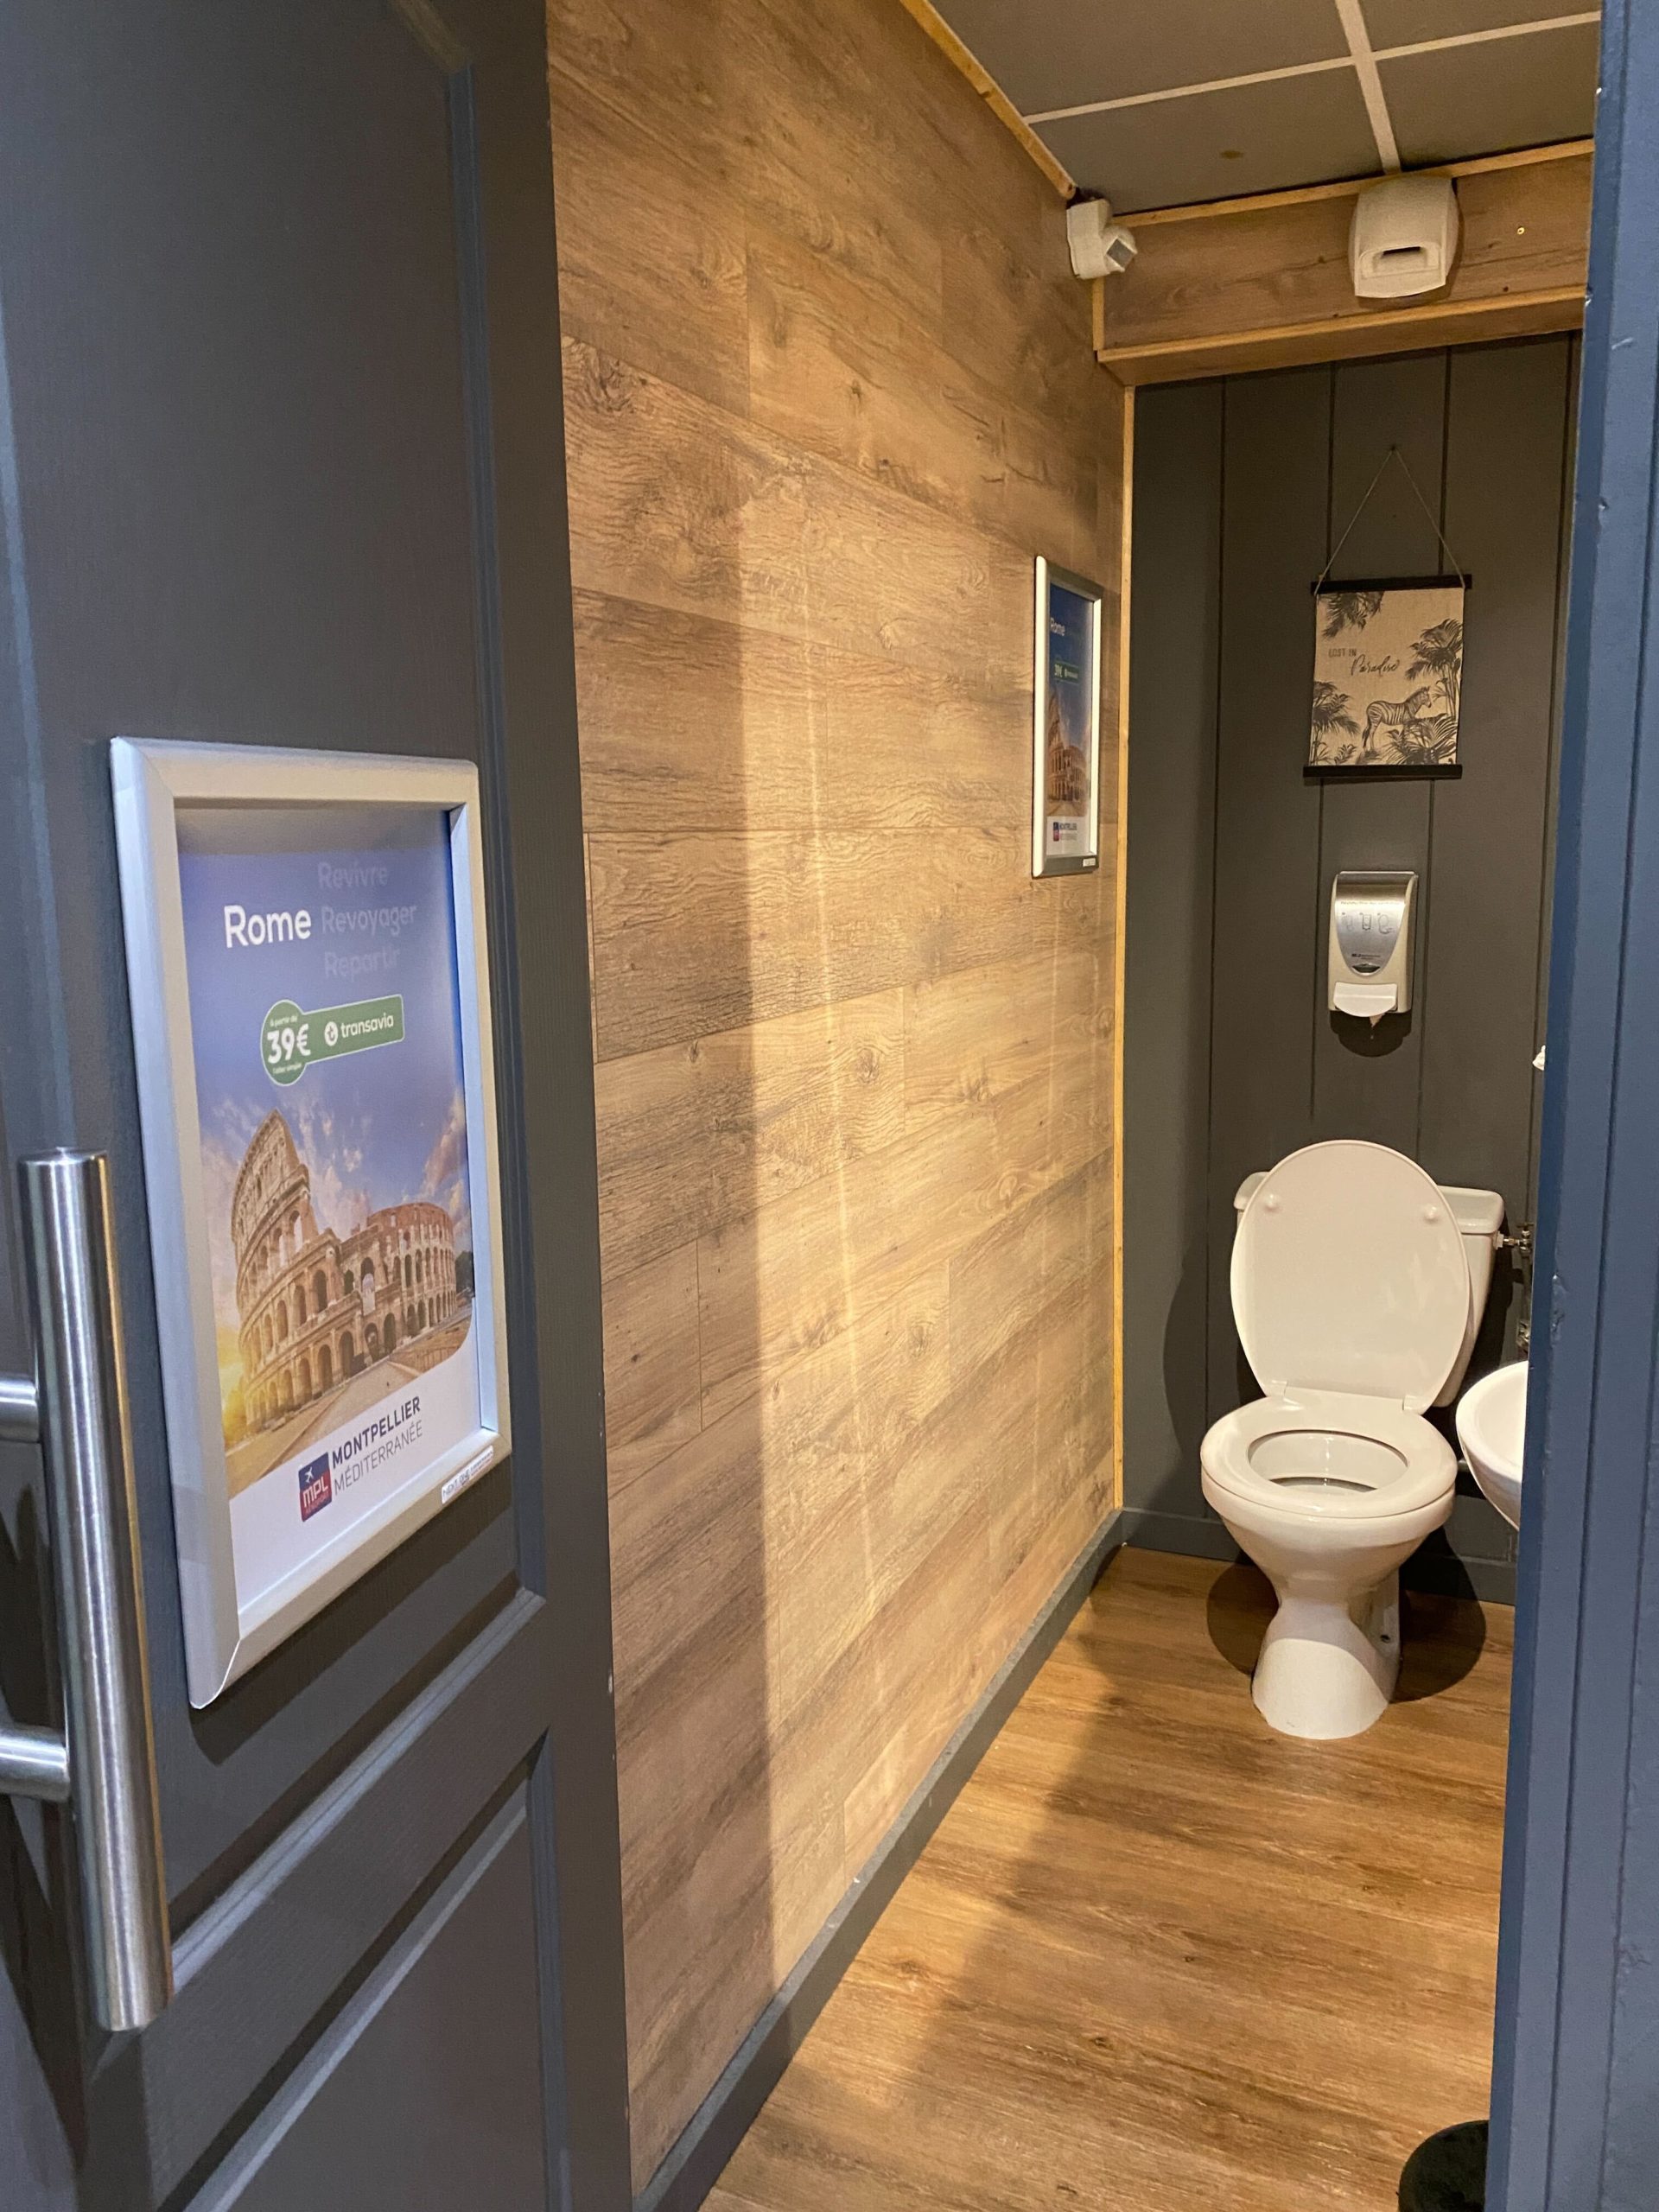 reseau publicitaire salles de sport toilettes